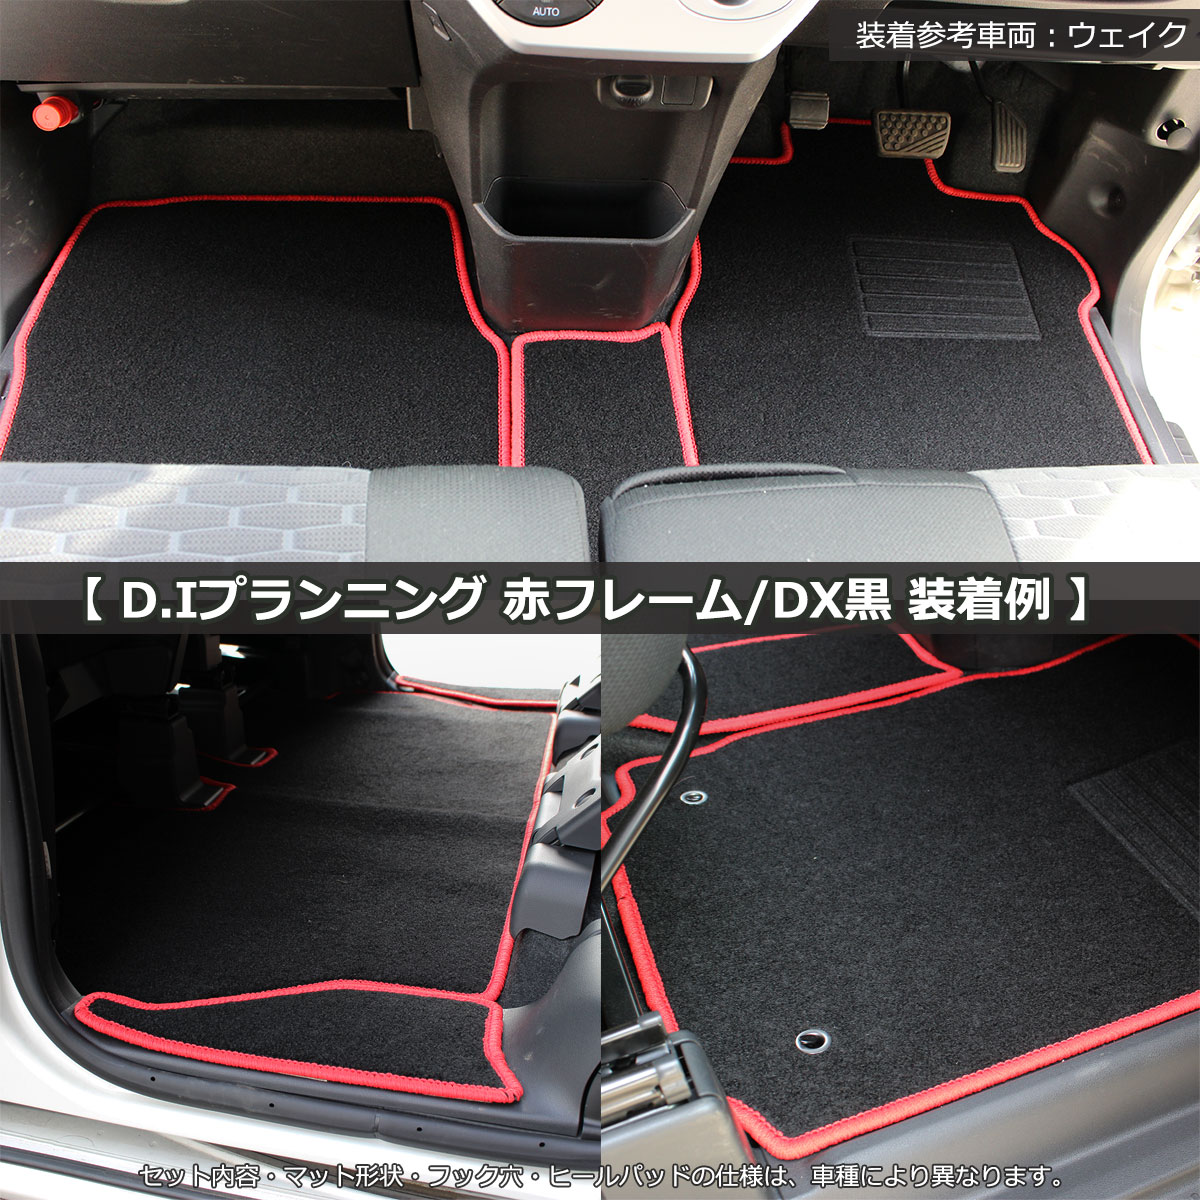 トヨタ マークX 130系 フロアマット カーマット 赤フレーム/DX黒 社外新品